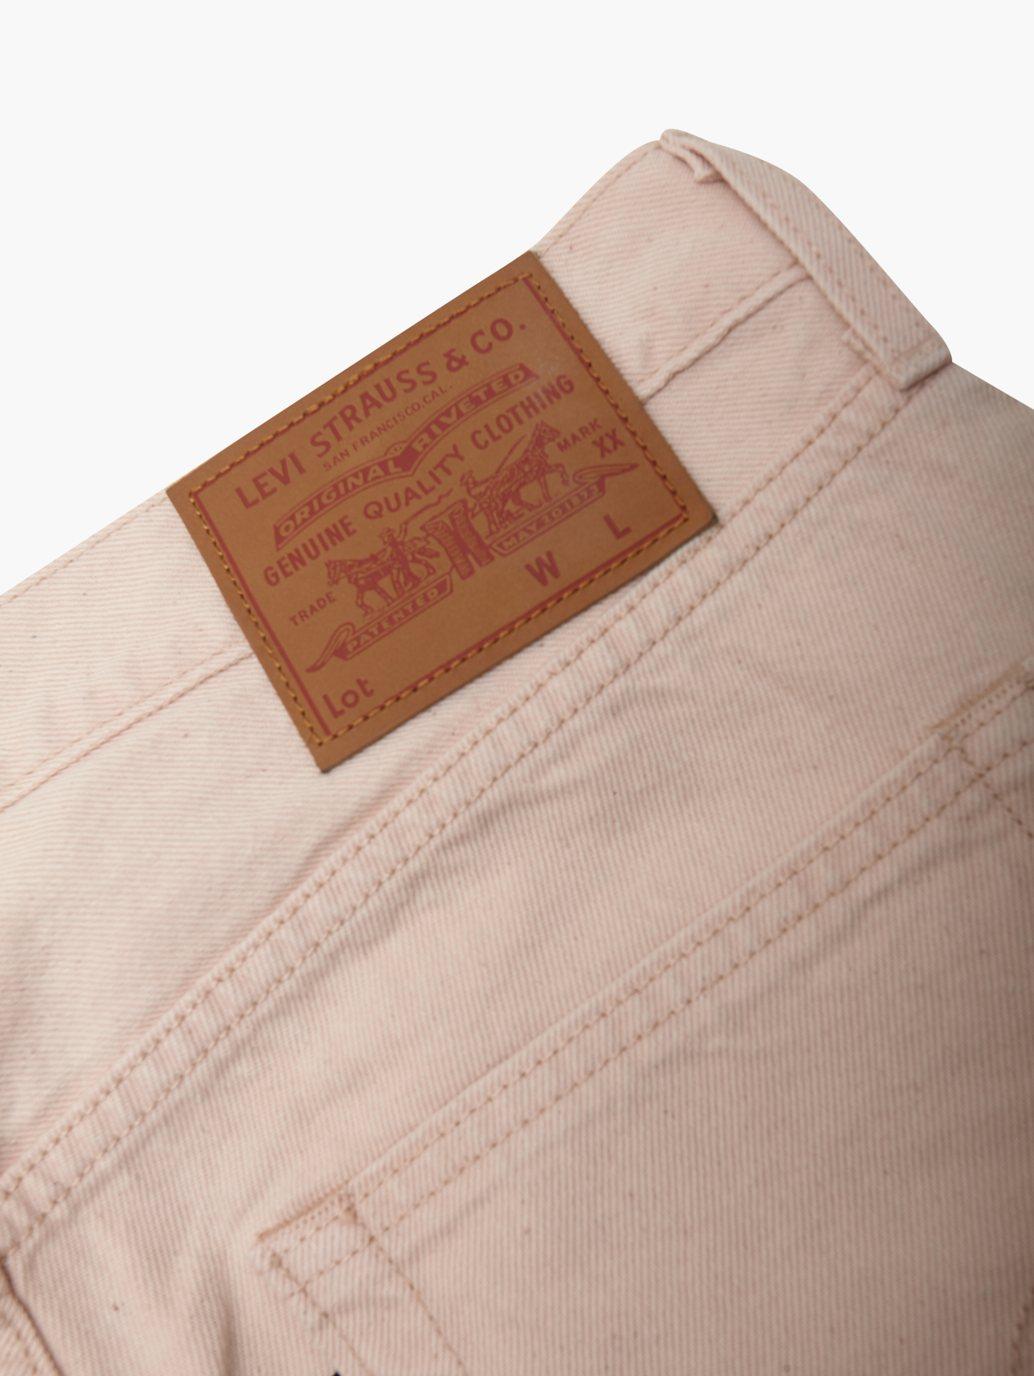 levis singapore mens 501 original jeans 005013299 19 Details